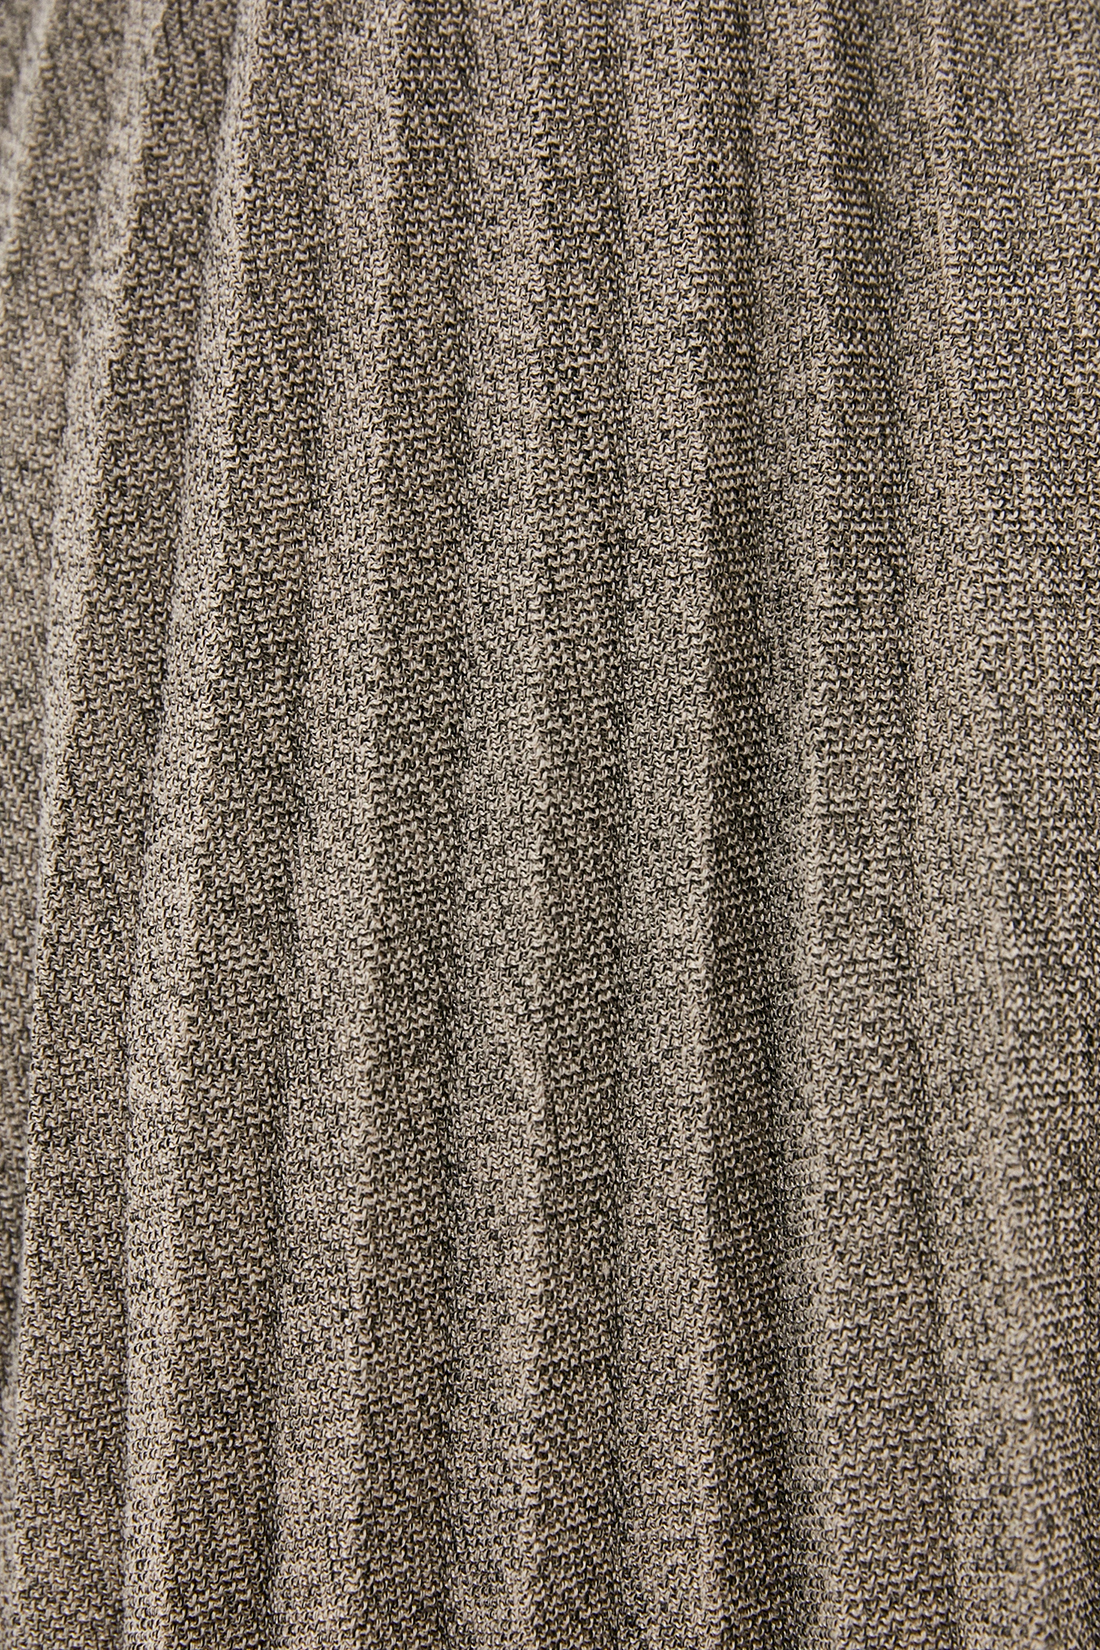 Юбка (арт. baon B470522), размер XS, цвет ashwood melange#бежевый Юбка (арт. baon B470522) - фото 3